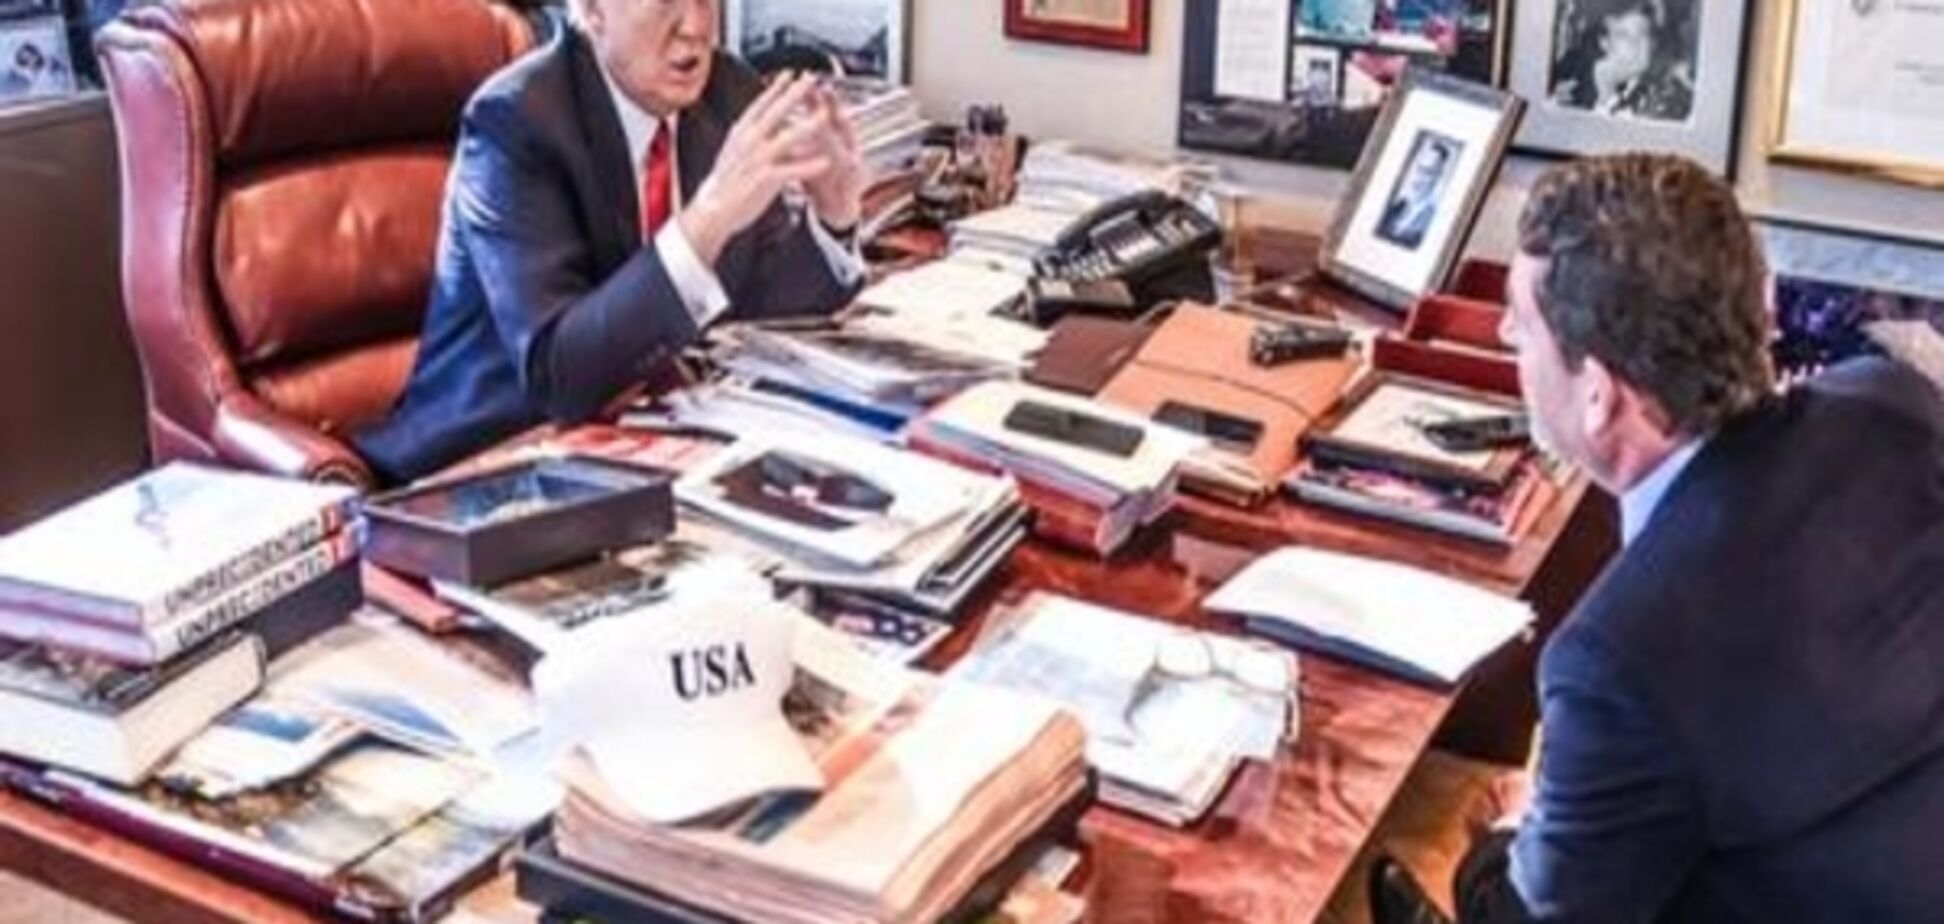 Коментар: Розкіш і безлад письмового стола Трампа